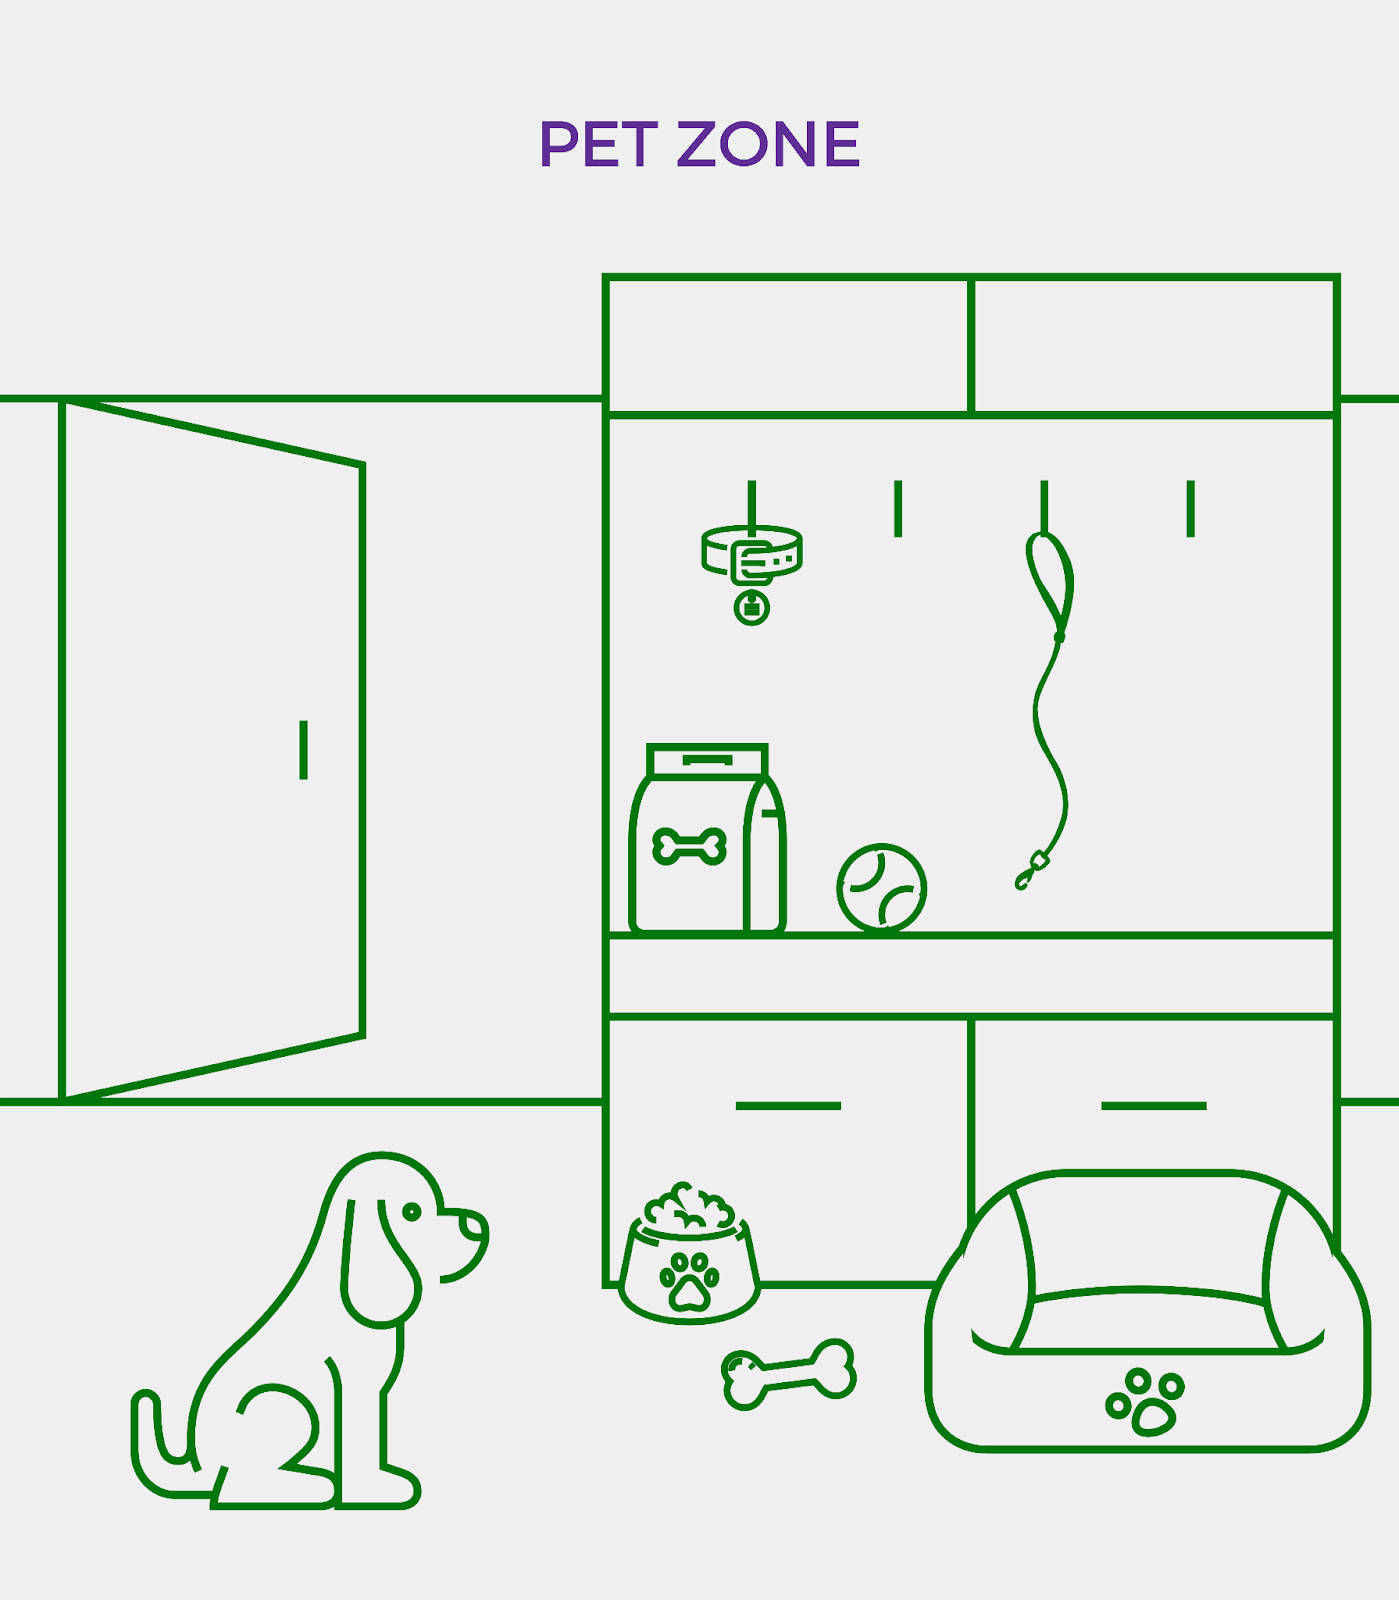 Pet zone